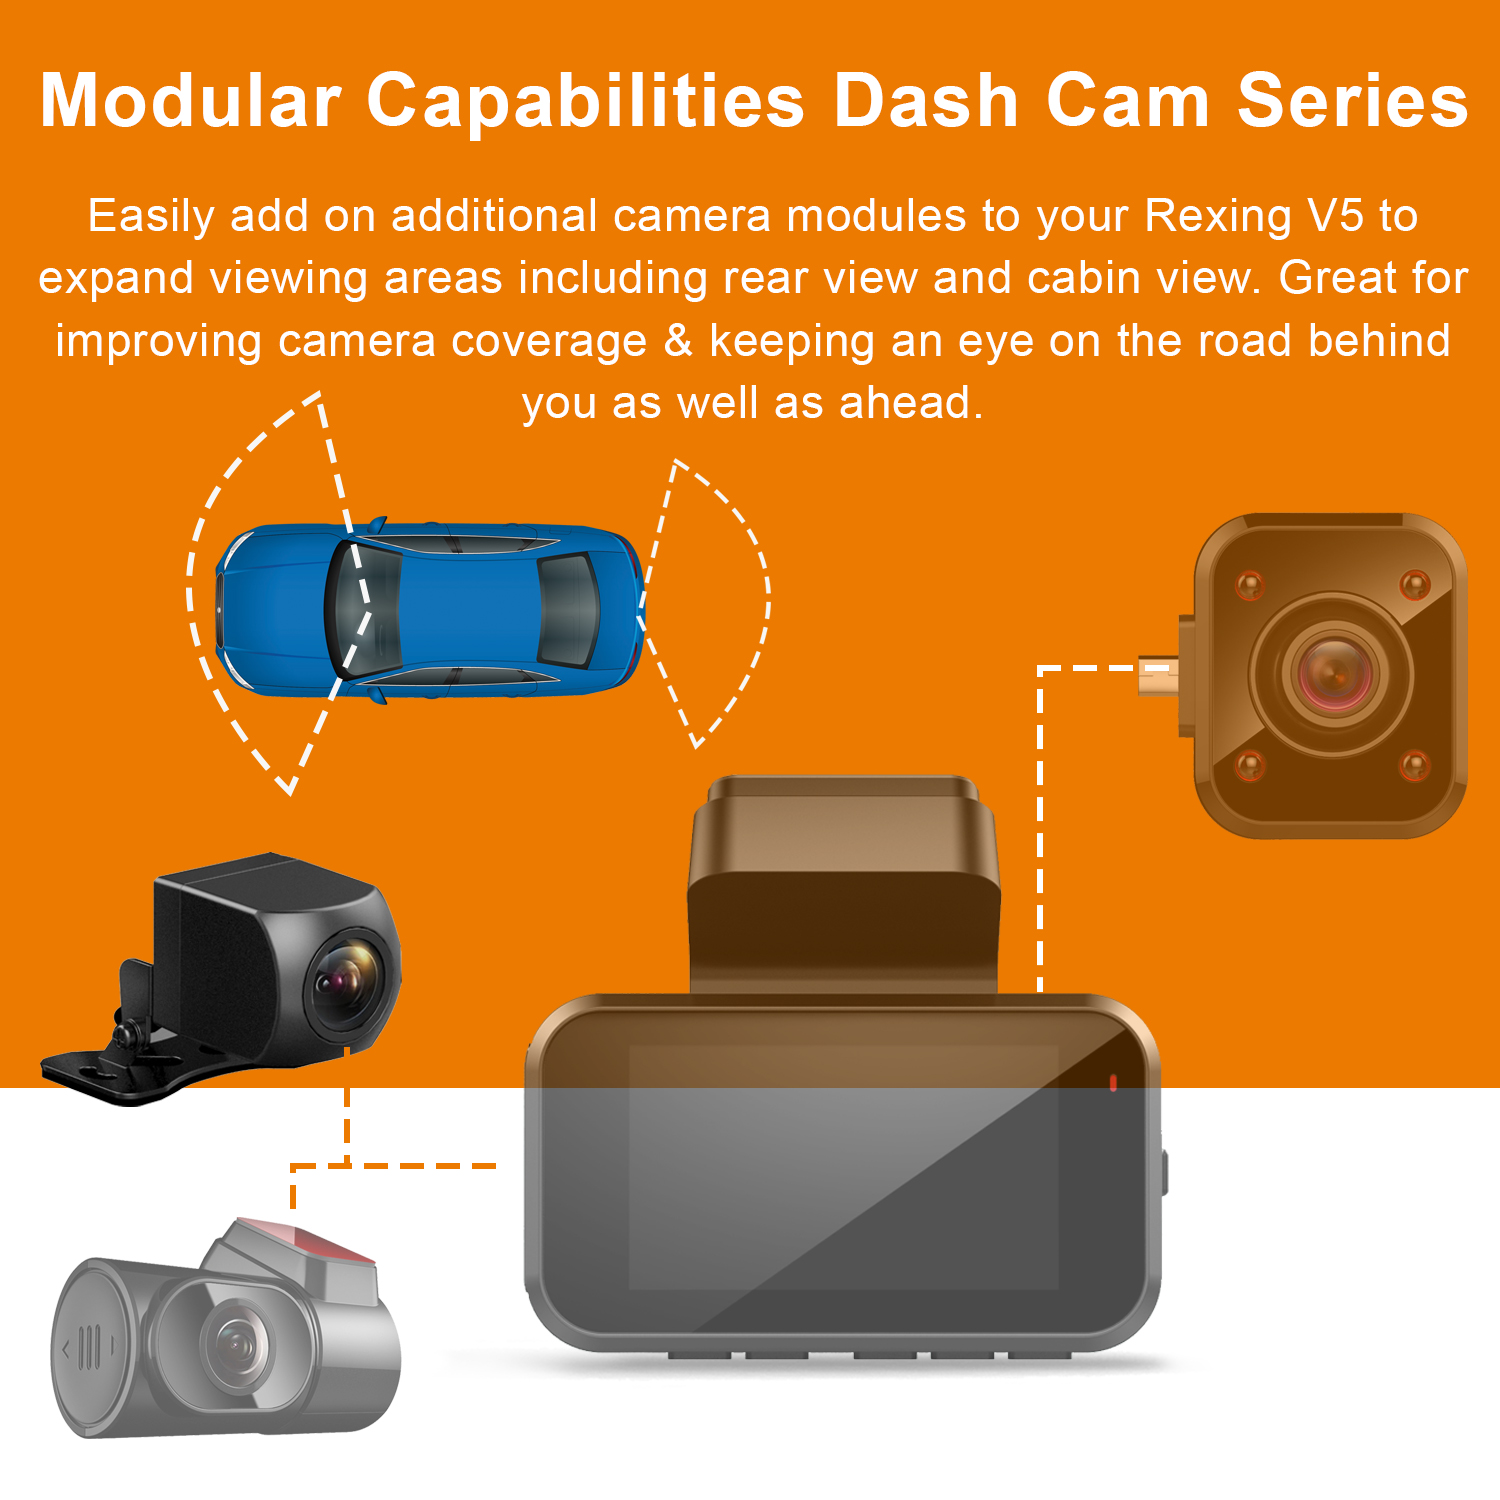 Rexing Waterproof Rear View Camera For V5 Premium 4K Modular Capabilities Car Dash Cam 1080p